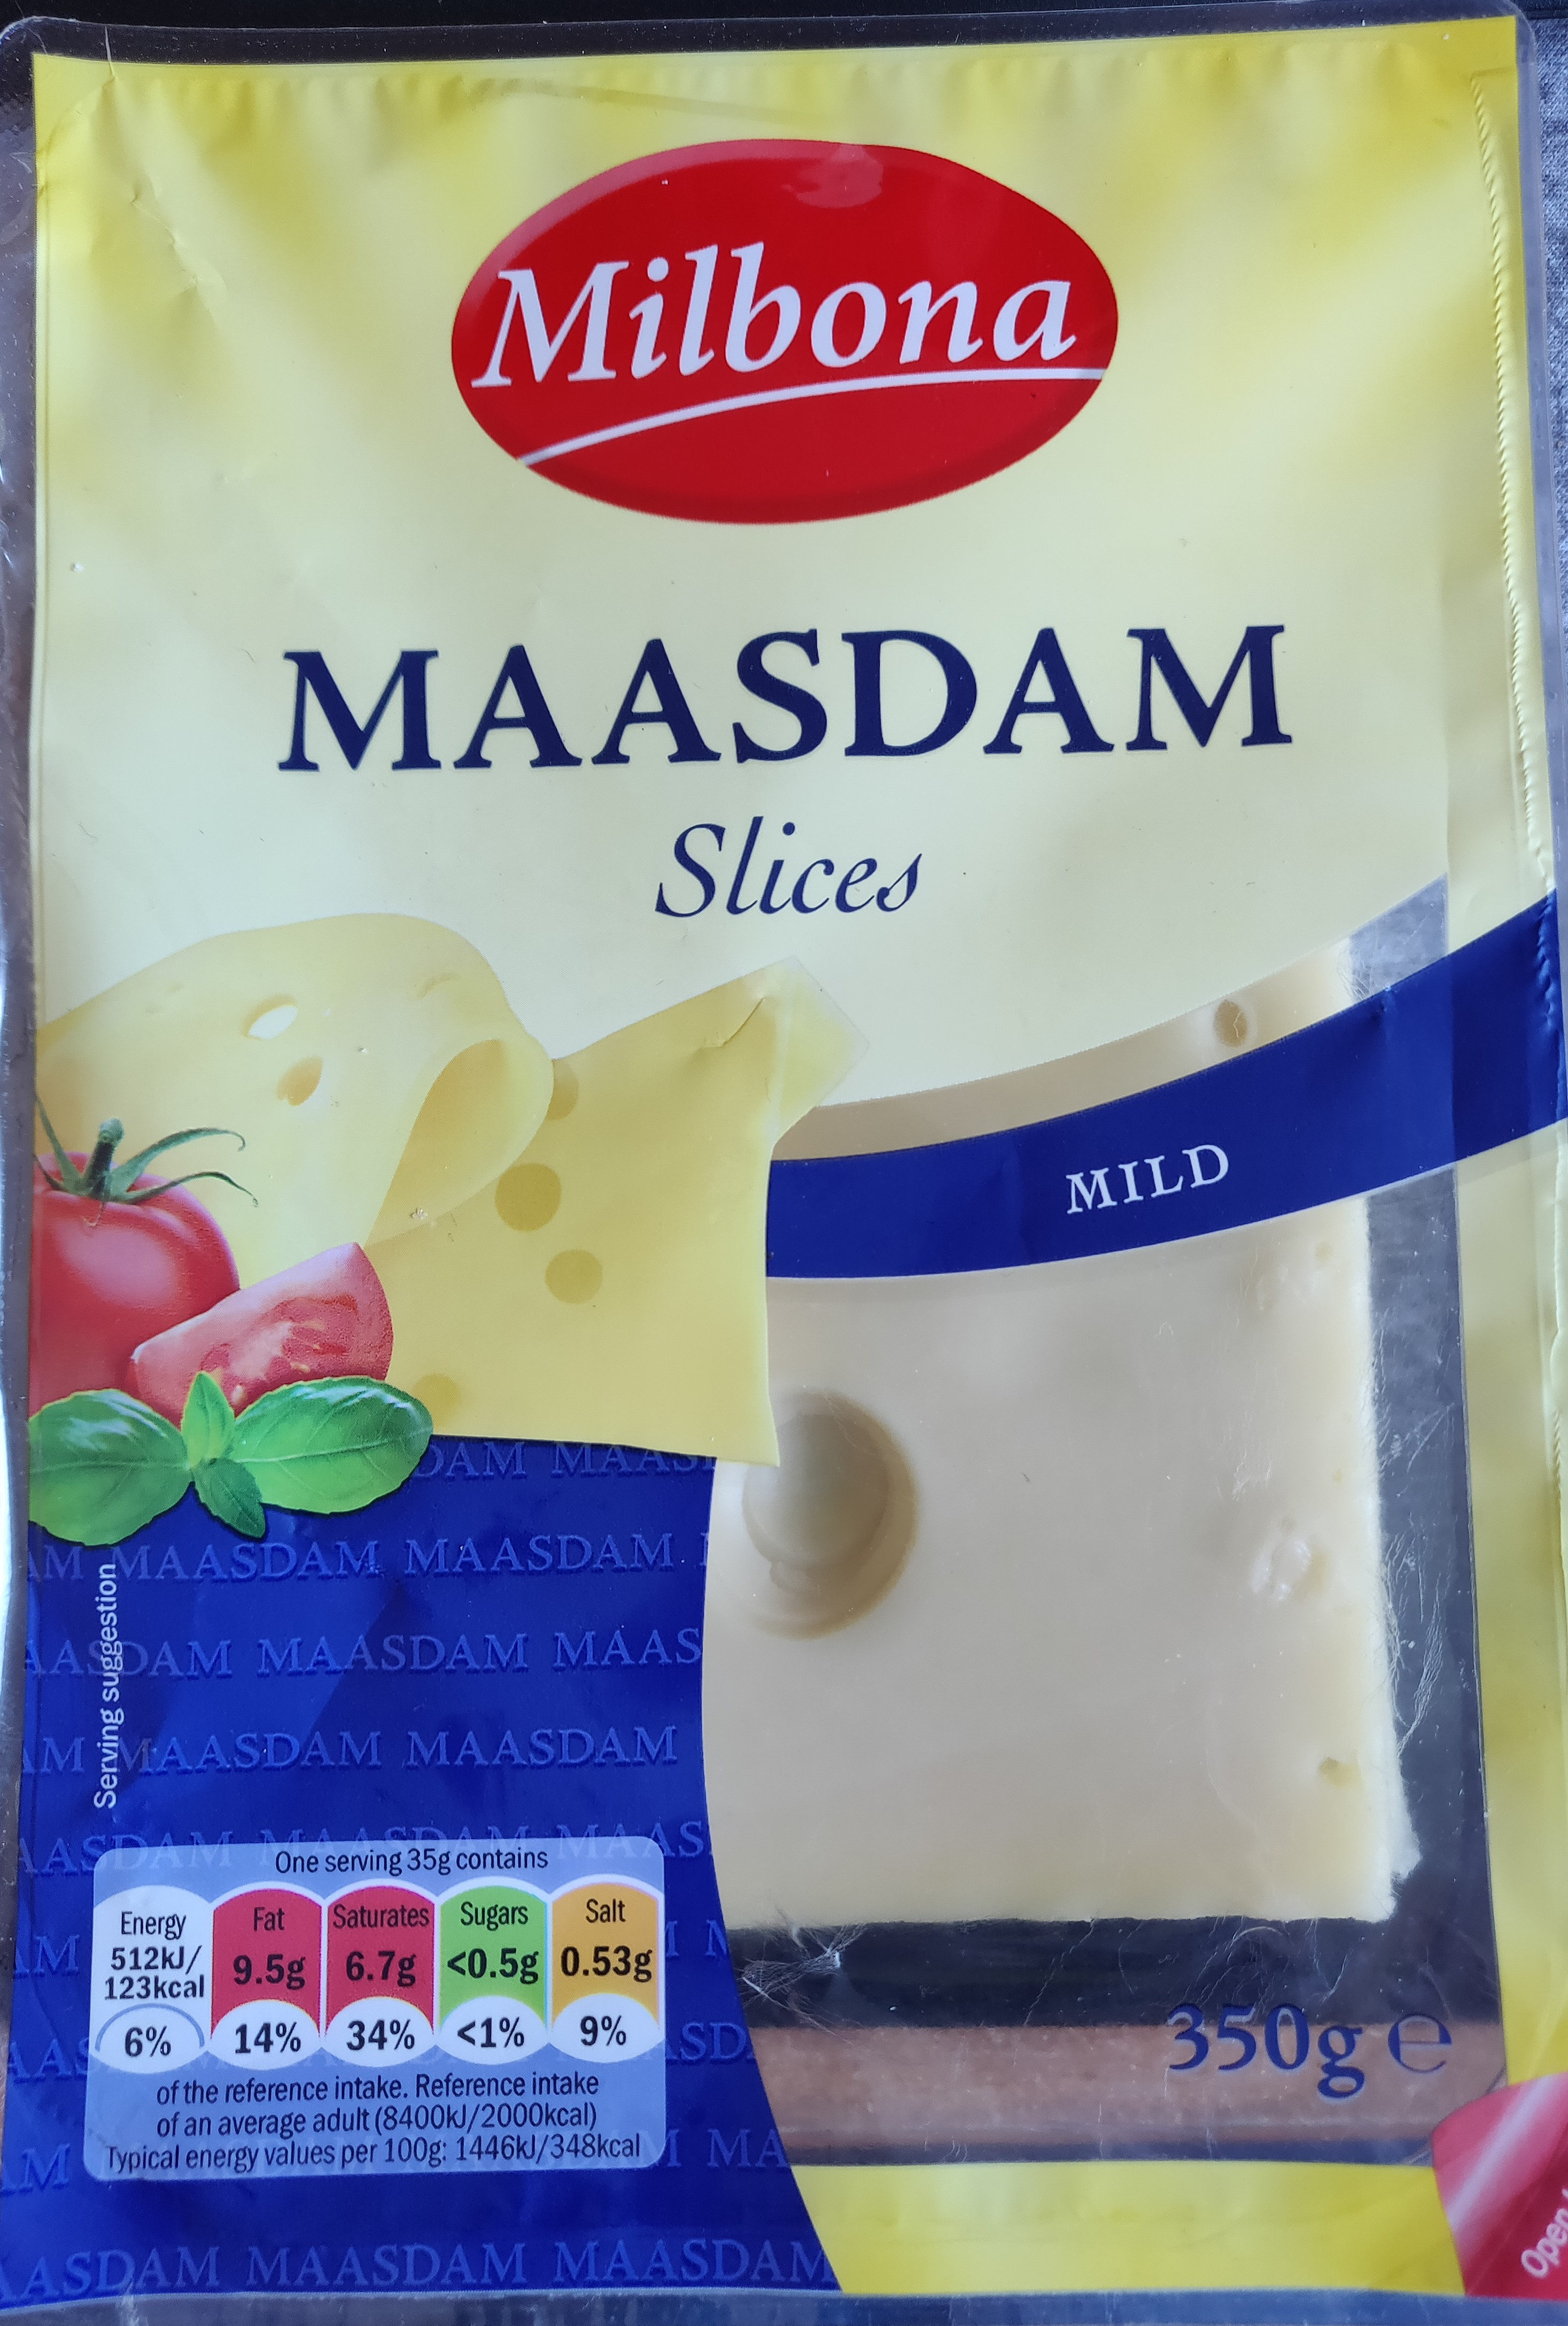 Massdsm slices mild - Product - en